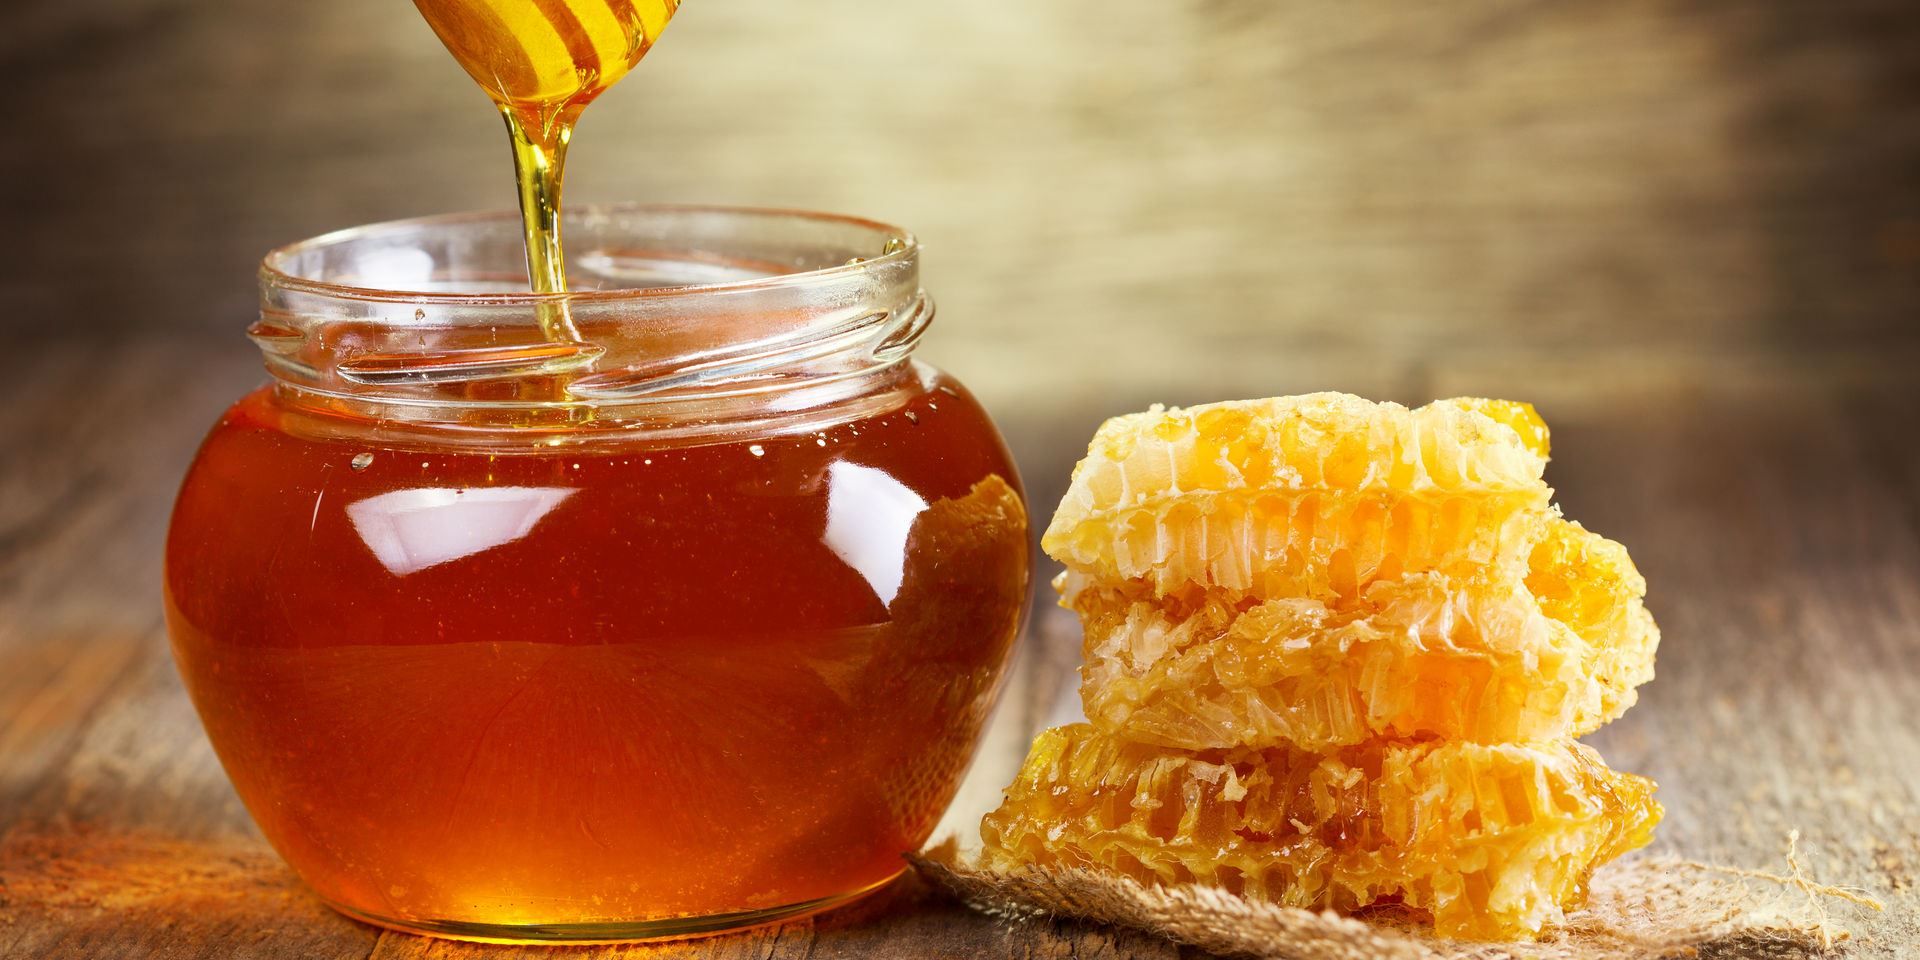 Creé una plantilla para una tienda en línea sobre el tema de la miel